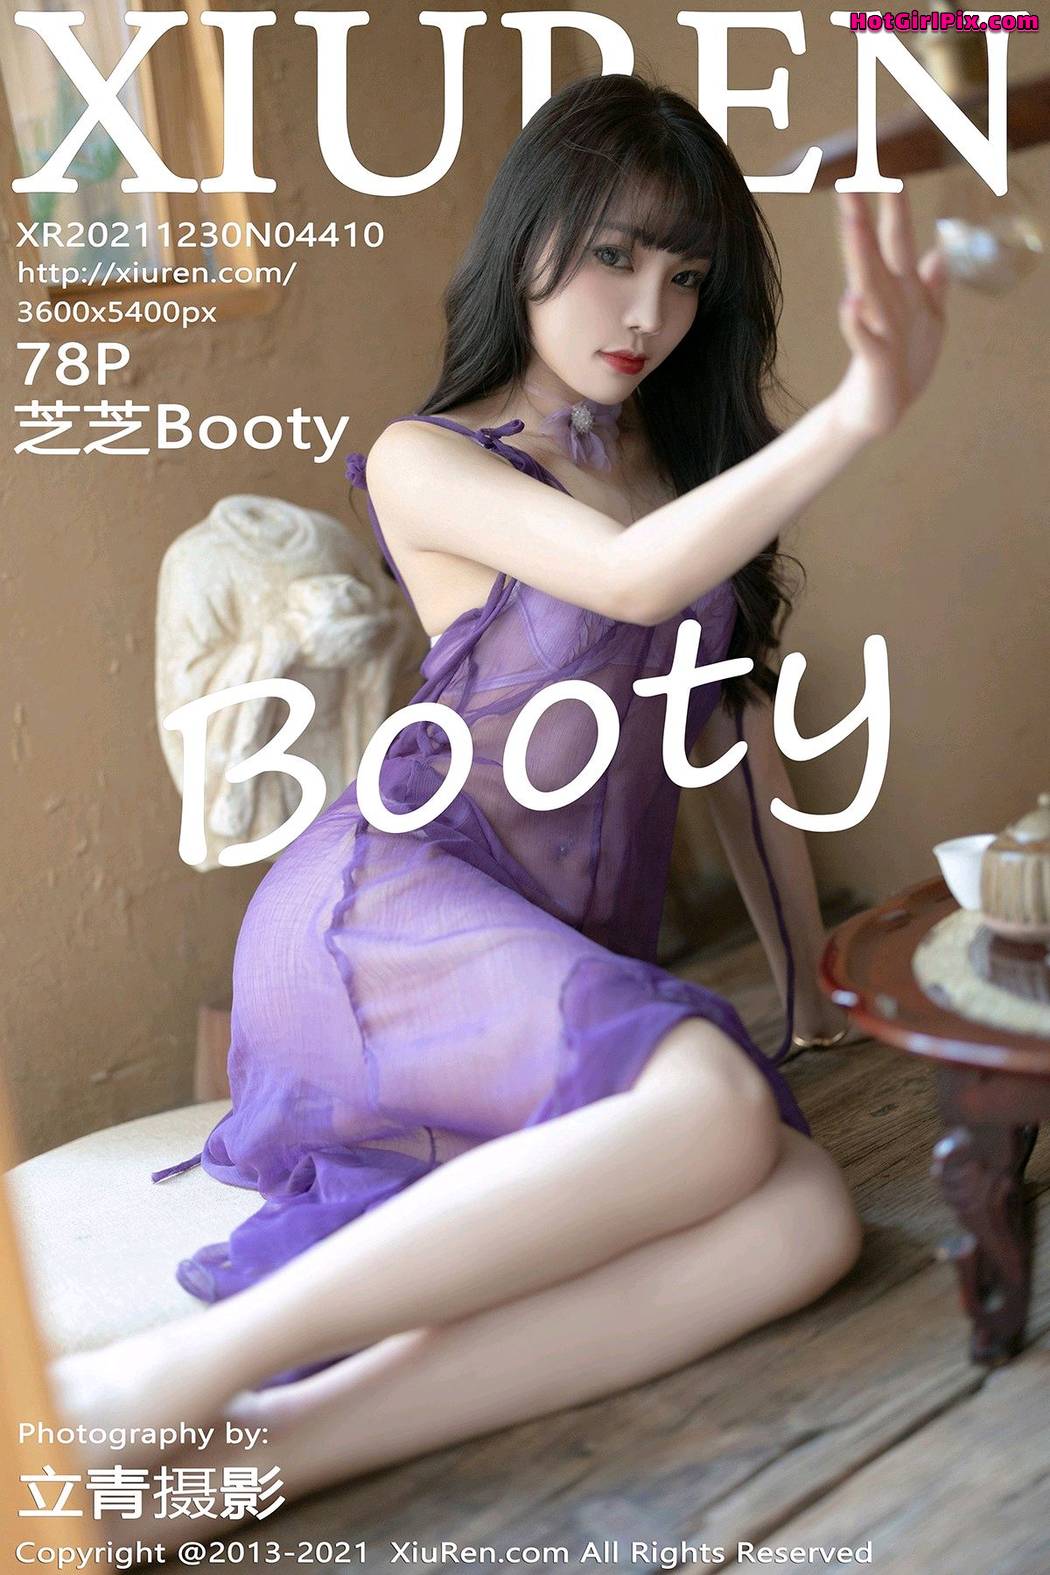 [XIUREN] No.4410 Booty 芝芝 Cover Photo